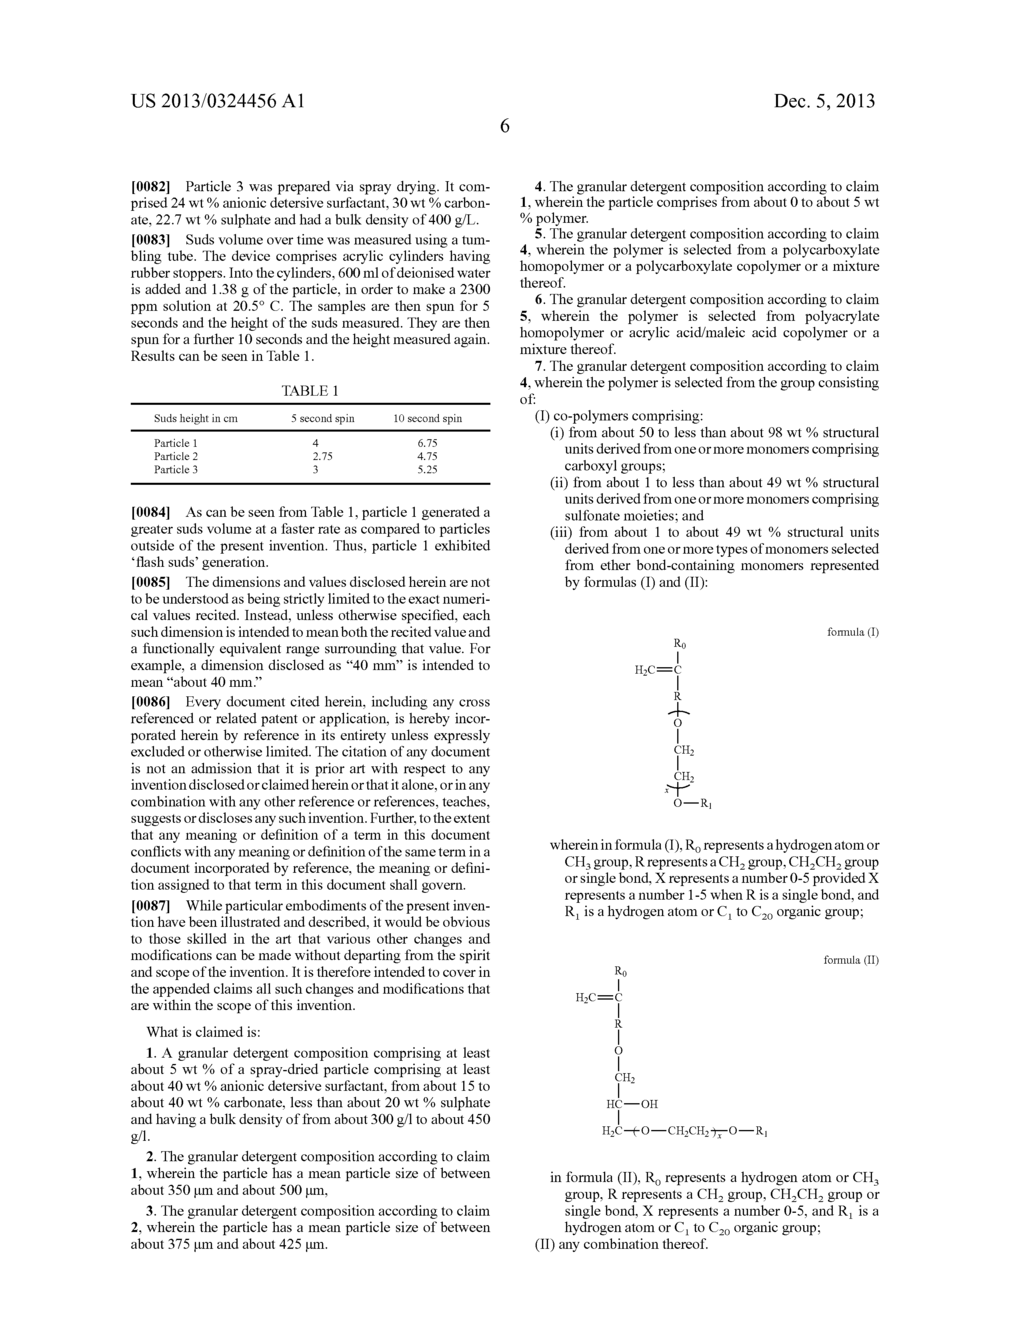 SPRAY-DRIED DETERGTENT POWDER - diagram, schematic, and image 07